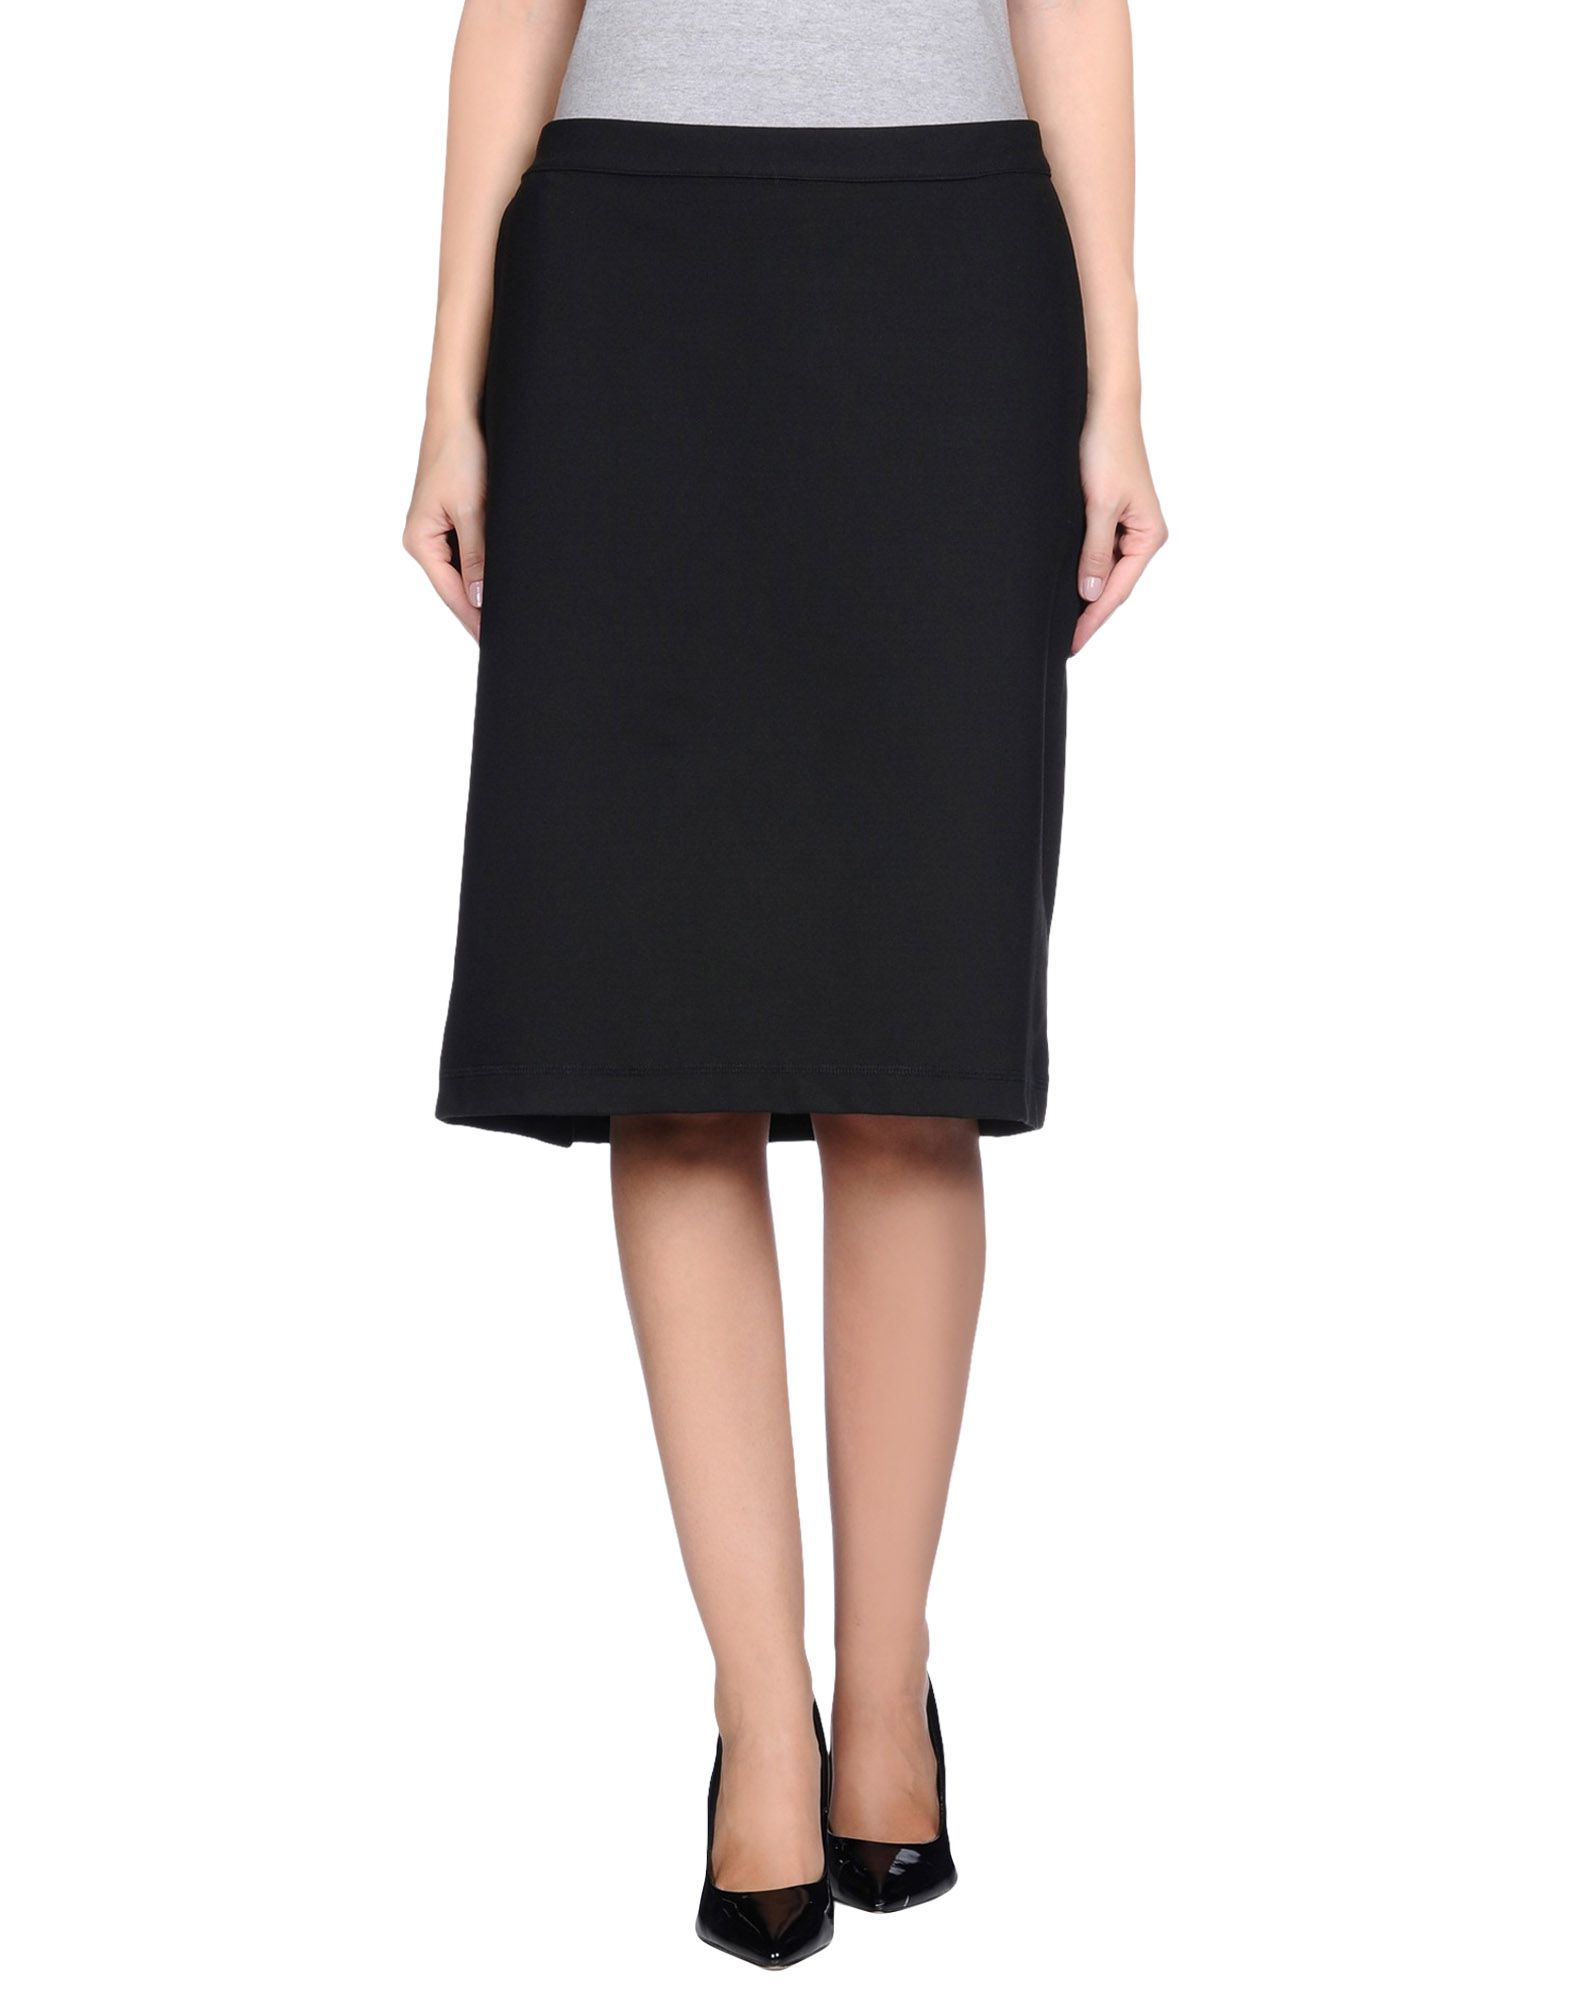 Lyst - Gianfranco Ferré Knee Length Skirt in Black